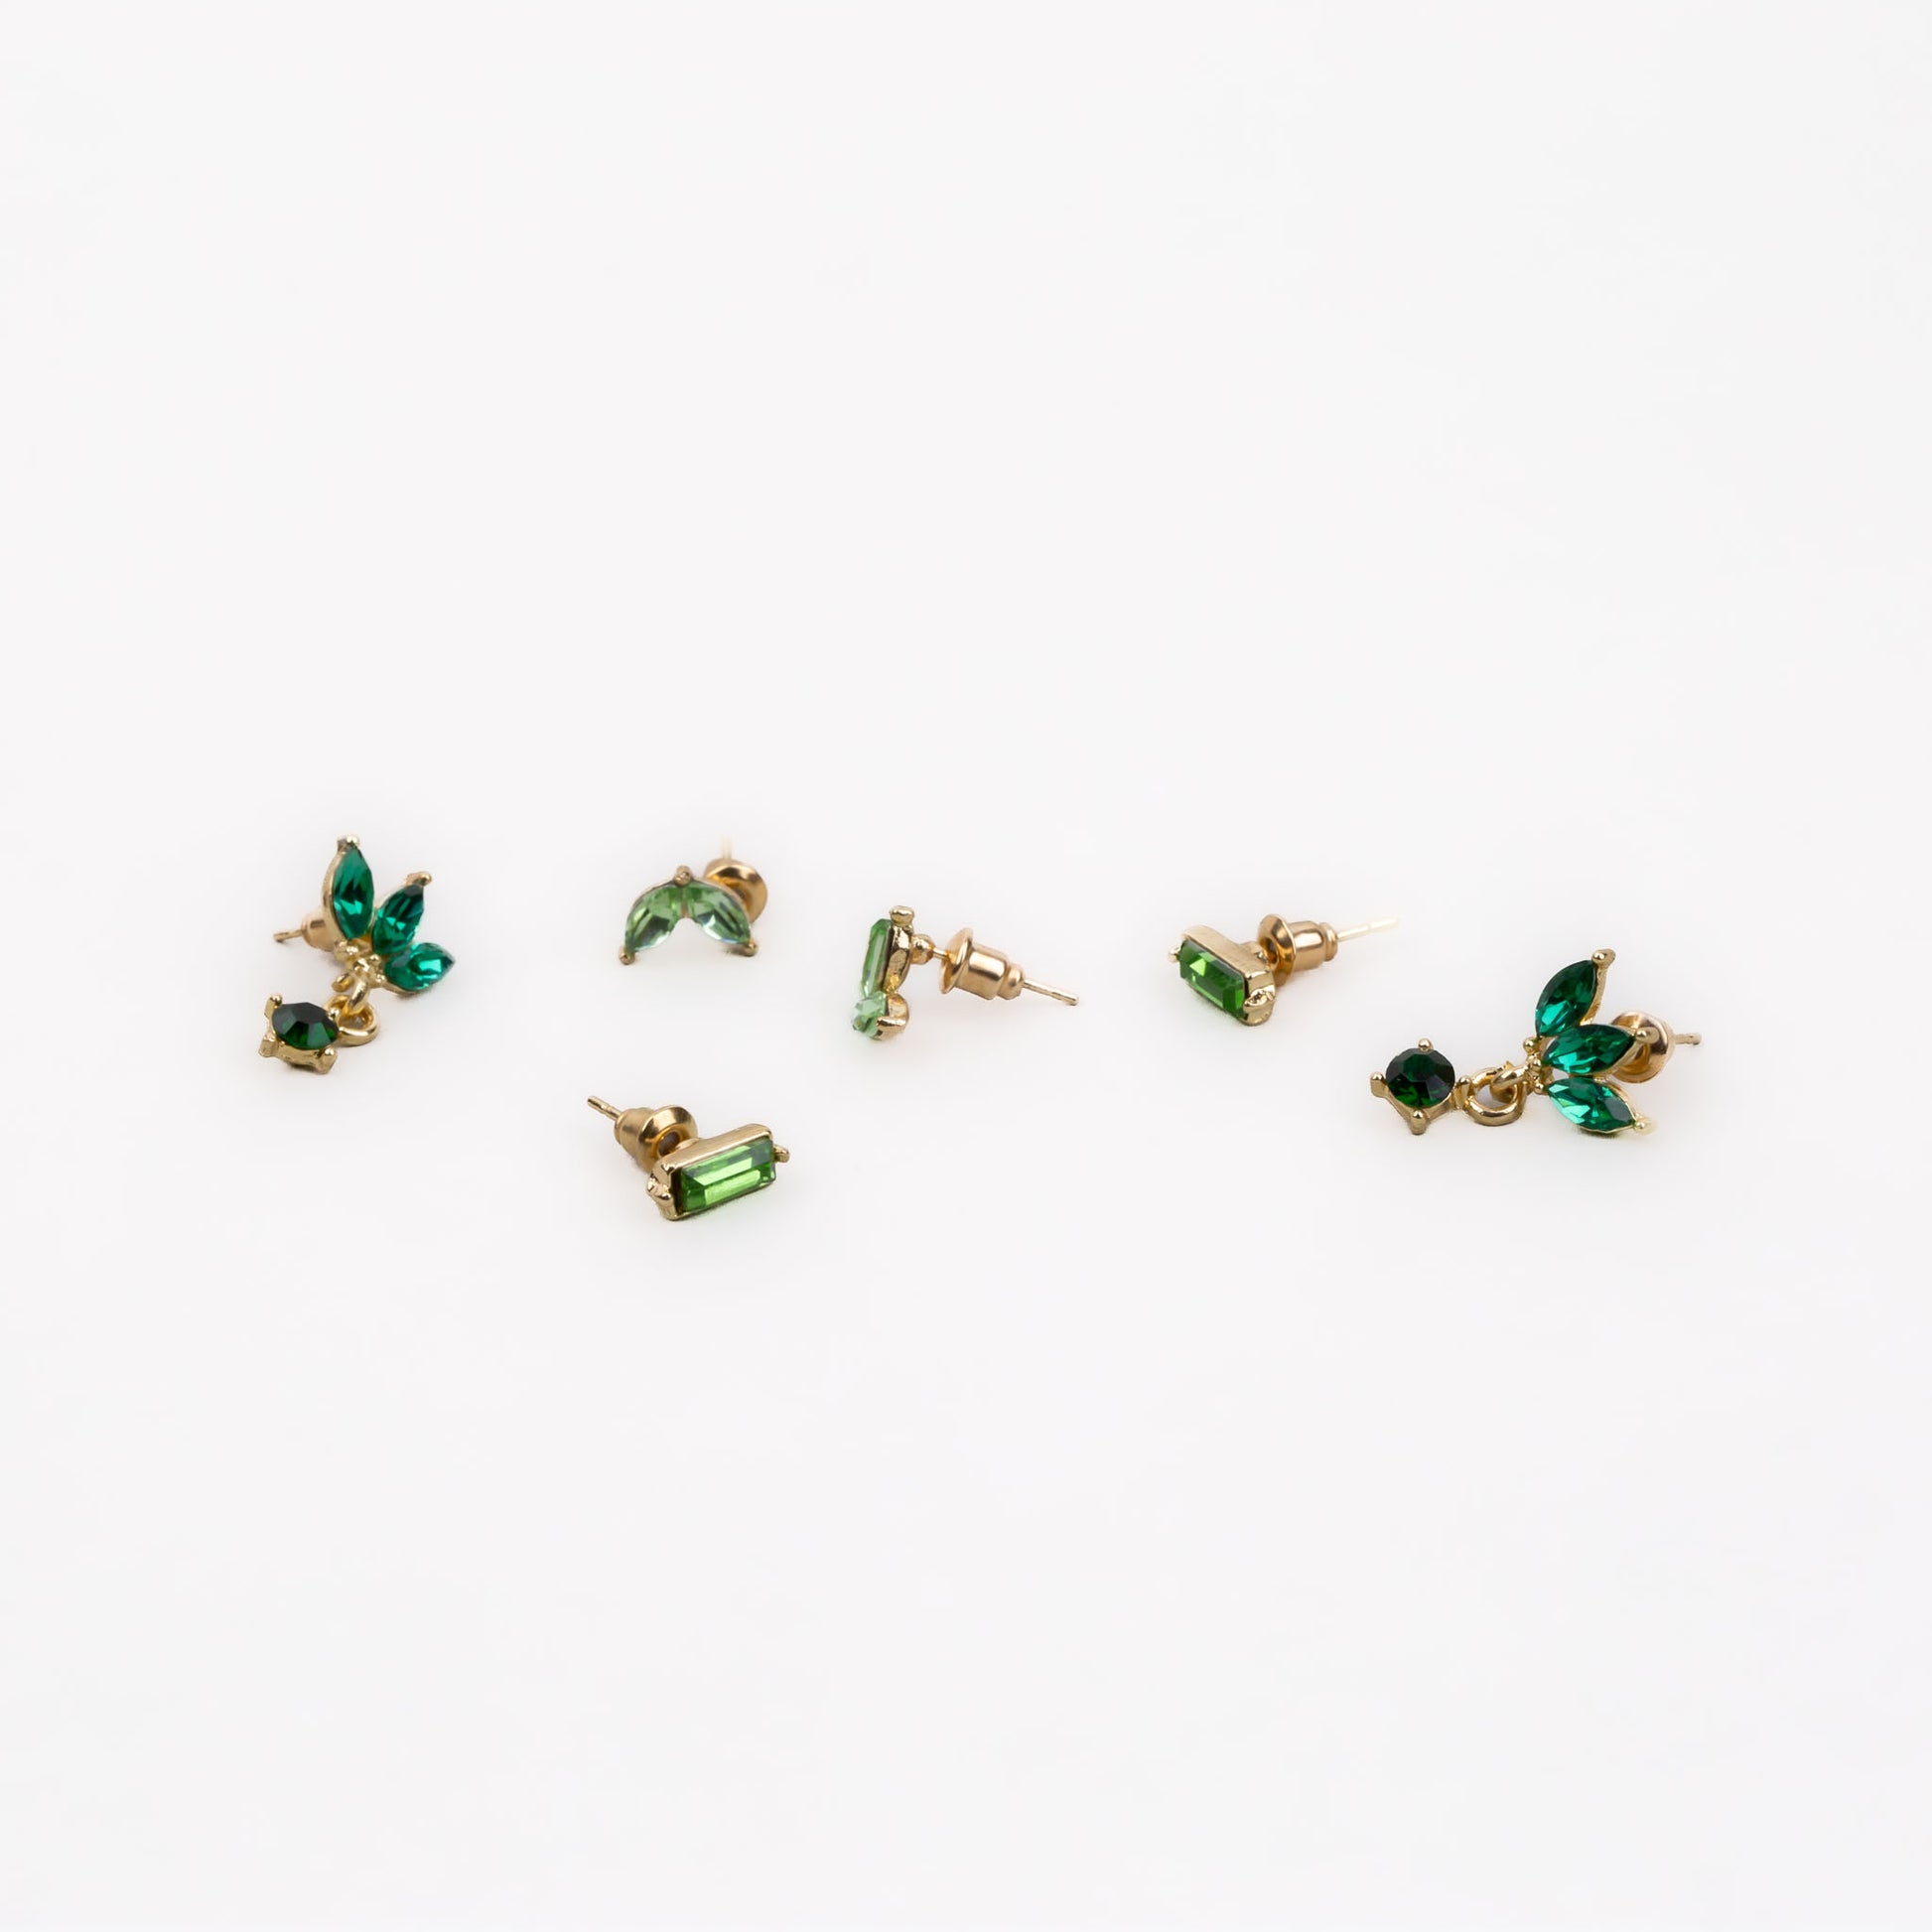 Cercei mici cu formă de amuletă și pietre delicate, set 3 perechi - Verde, Auriu